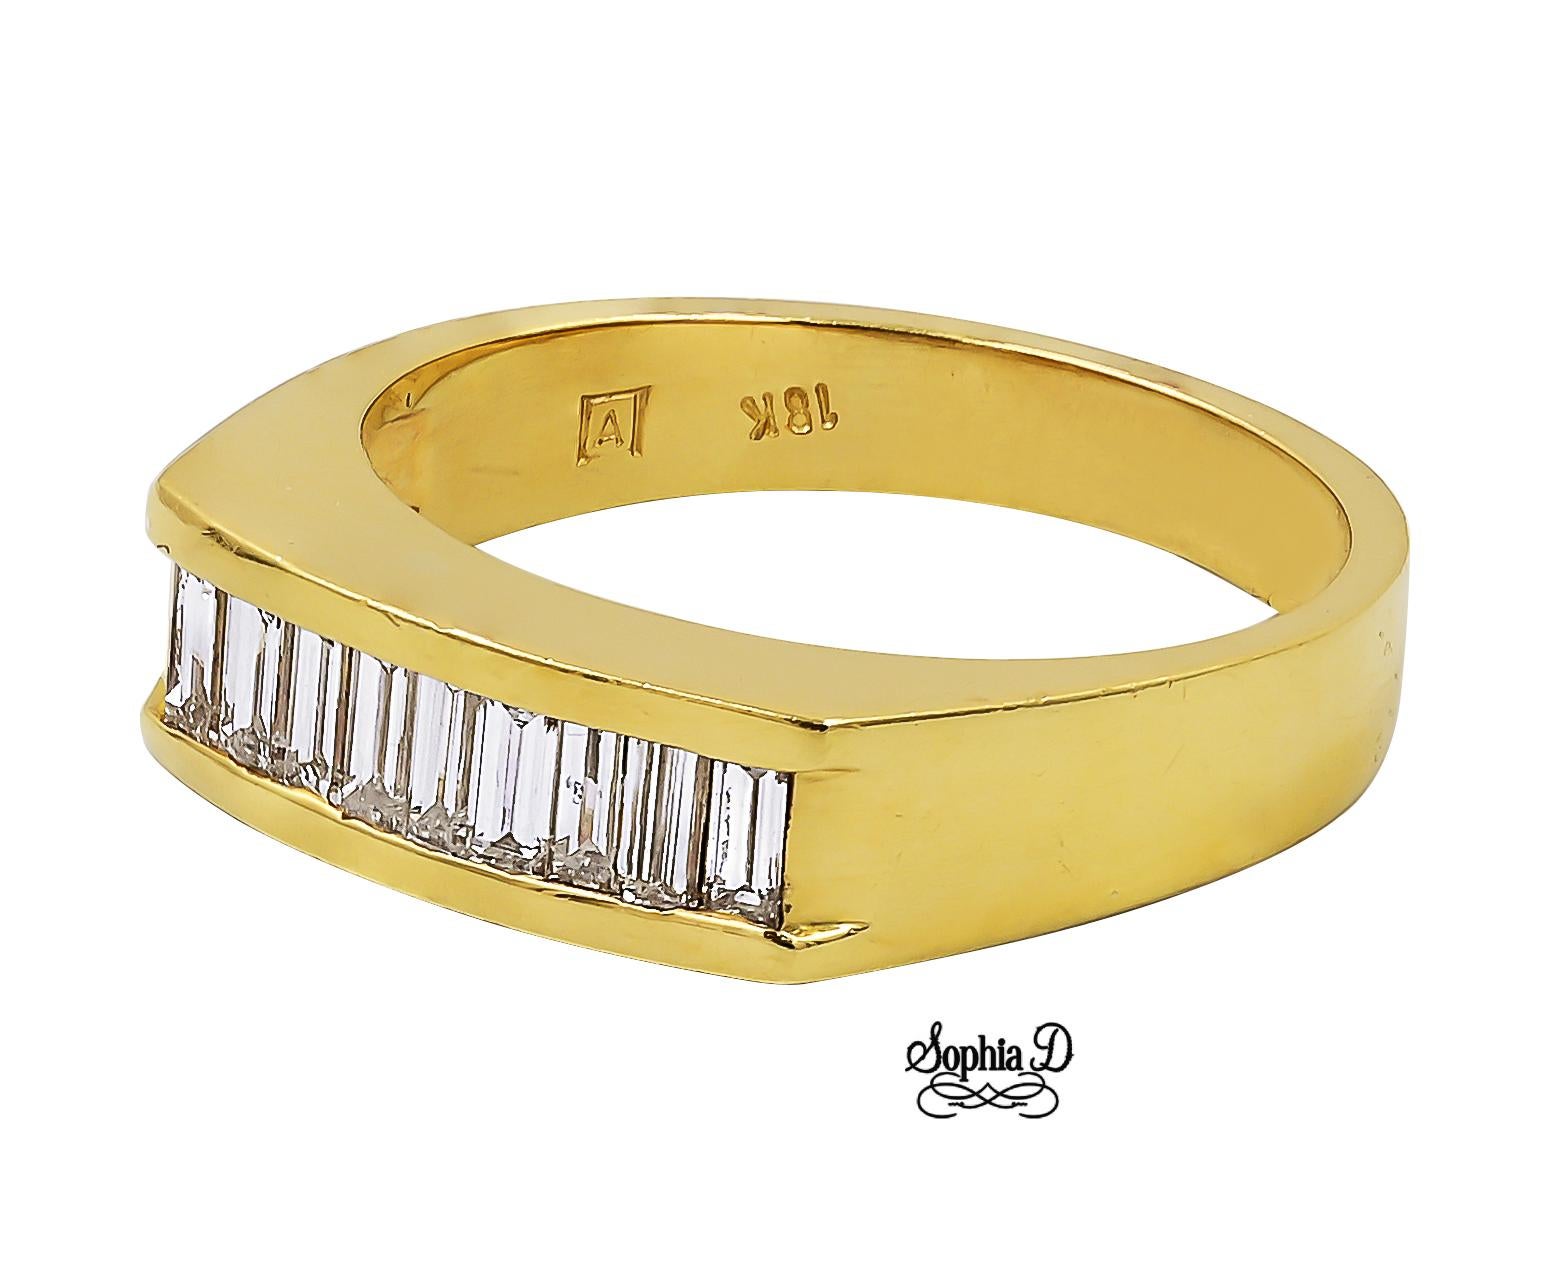 Bague en or jaune 18K avec des diamants de taille émeraude.

Sophia D by Joseph Dardashti Ltd est connue dans le monde entier depuis 35 ans et s'inspire du design classique de l'Art déco qui fusionne avec les techniques de fabrication modernes.  